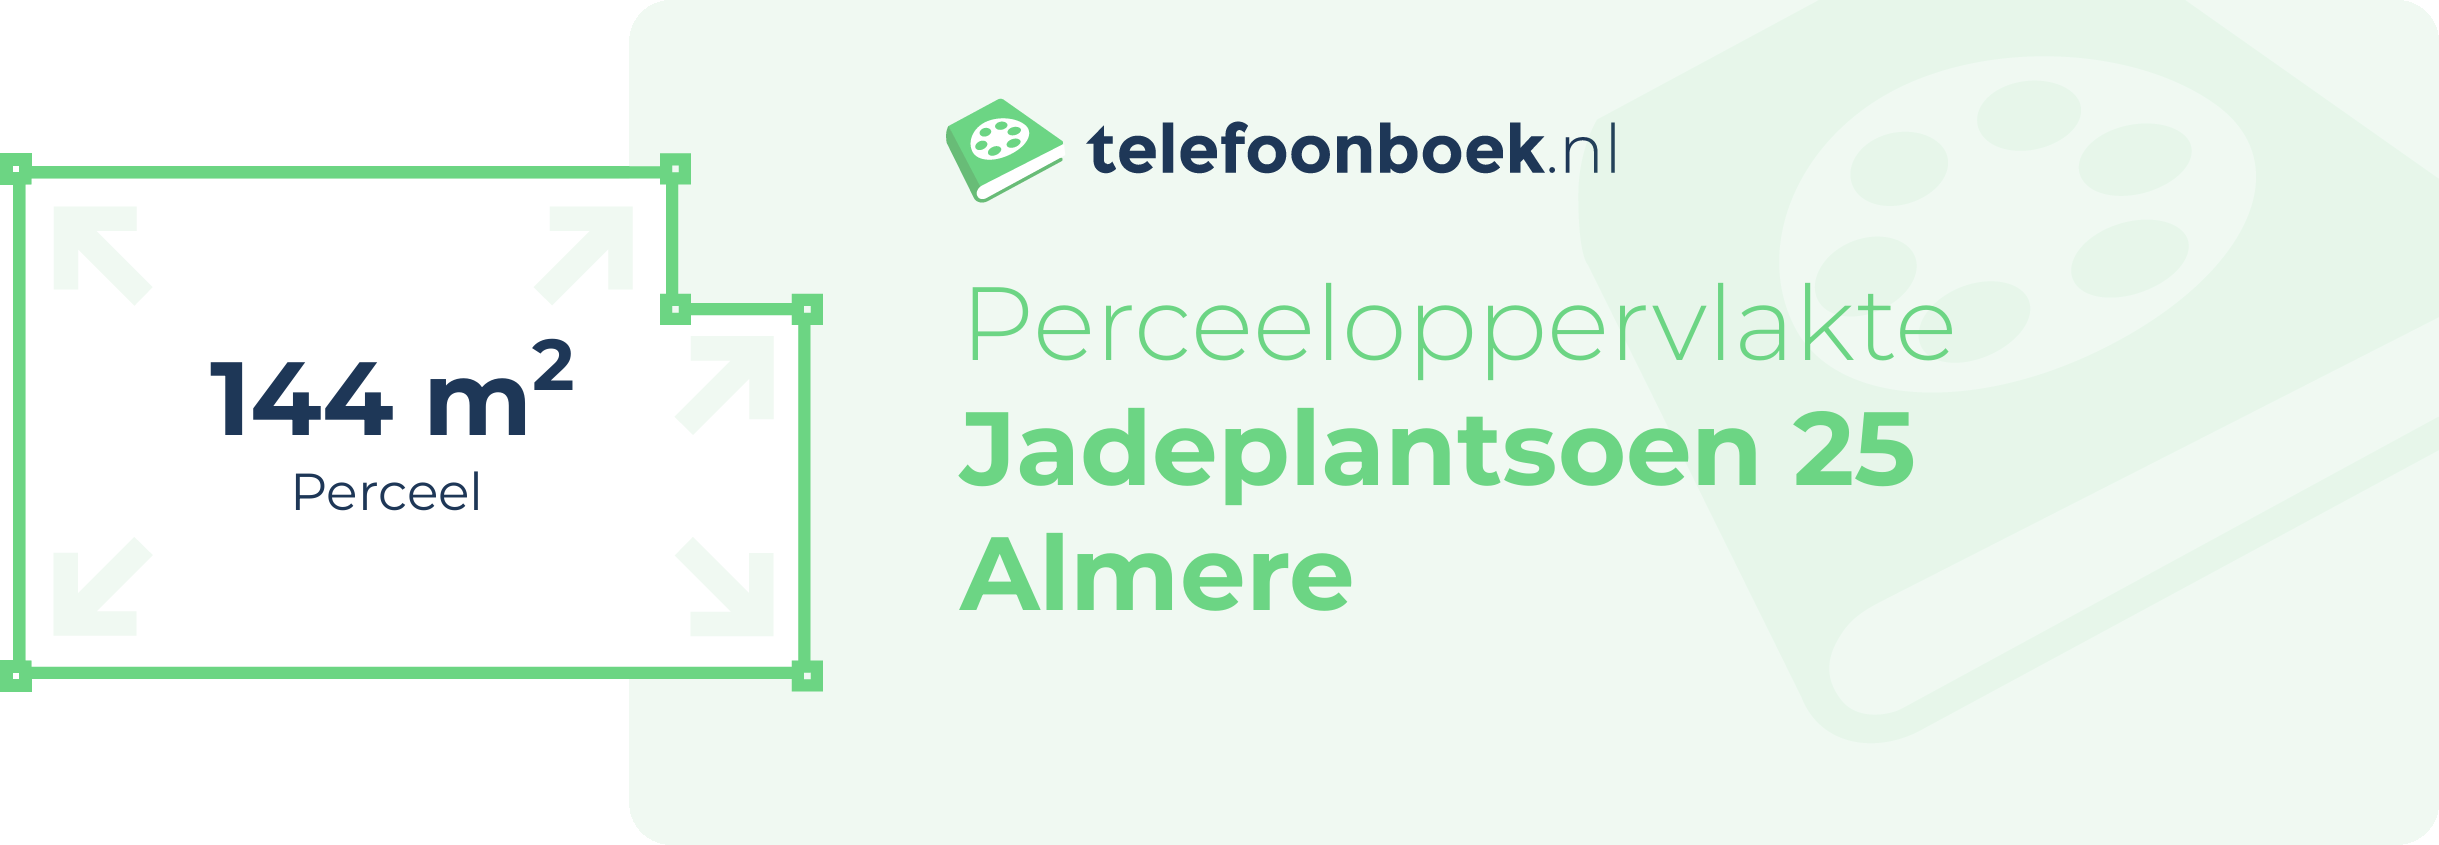 Perceeloppervlakte Jadeplantsoen 25 Almere